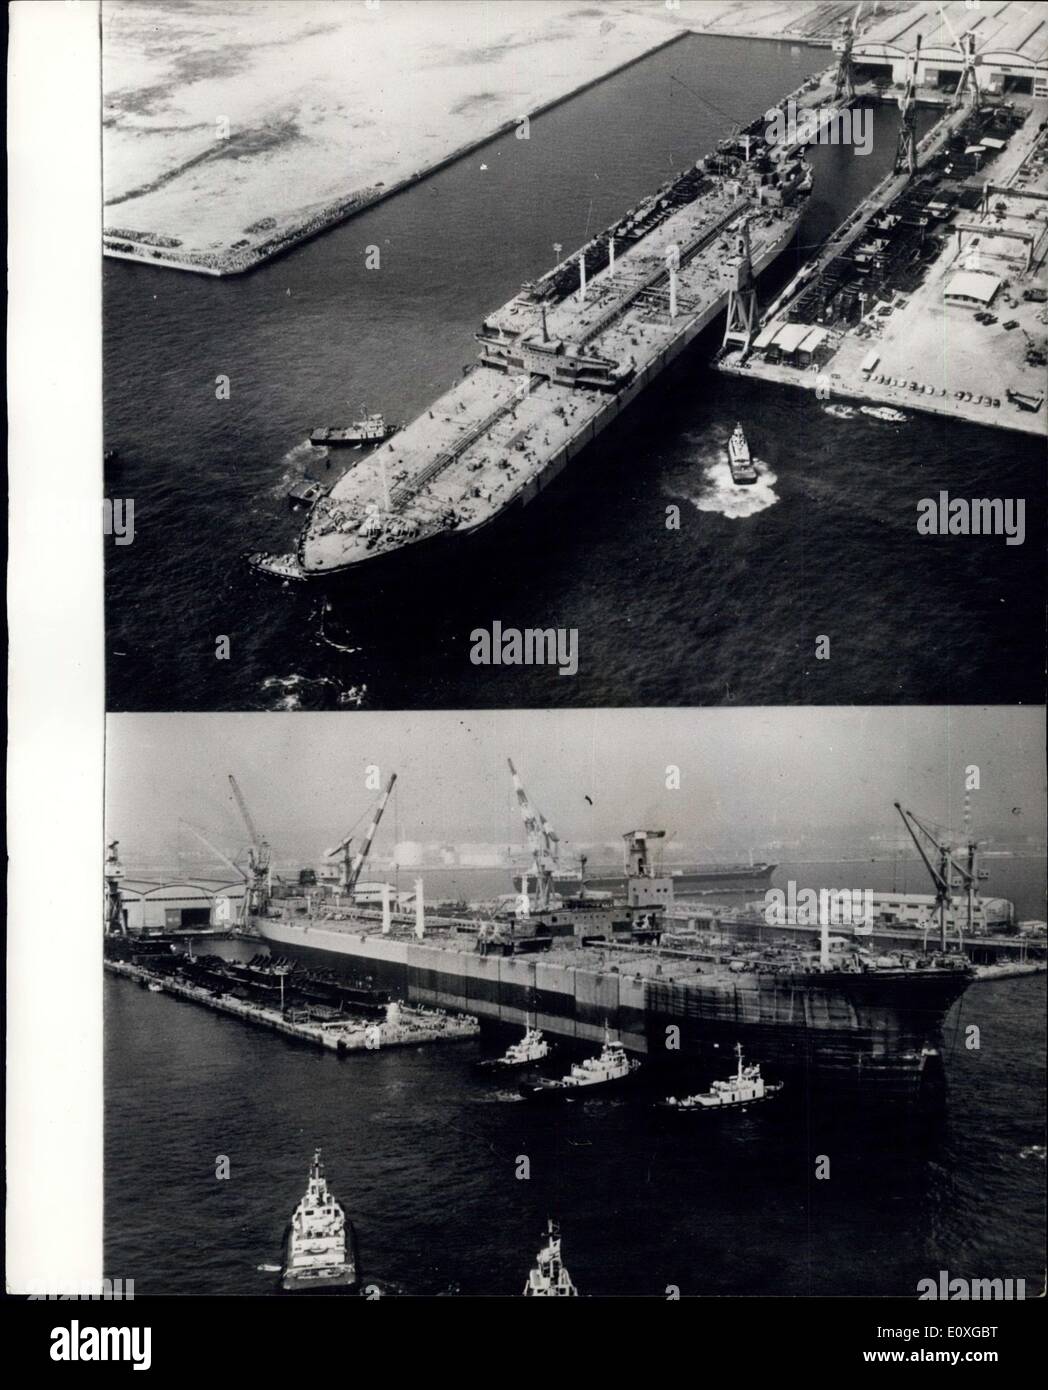 Sett. 12, 1966 - Il più grande del mondo di nave ha lanciato: di tutto il mondo più grande nave i 209.000-ton superpetroliera, Udemitsu Maru, misura 342 metri di lunghezza e 53 metri di larghezza e 49 metri dal suo fondo per la maggior parte di punta, è stato lanciato la scorsa settimana presso il cantiere navale Yakahama, Giappone di Ishikawajima-Harima Heavy Industries Cs. Costruito per Idamitau Kassn, una azienda giapponese leader nella raffinazione del petrolio e la ditta importatrice. Il mammoth tanker porterà olio dal golfo persico in Giappone a causa di forti venti il lancio è stata rinviata di 24 ore Foto Stock